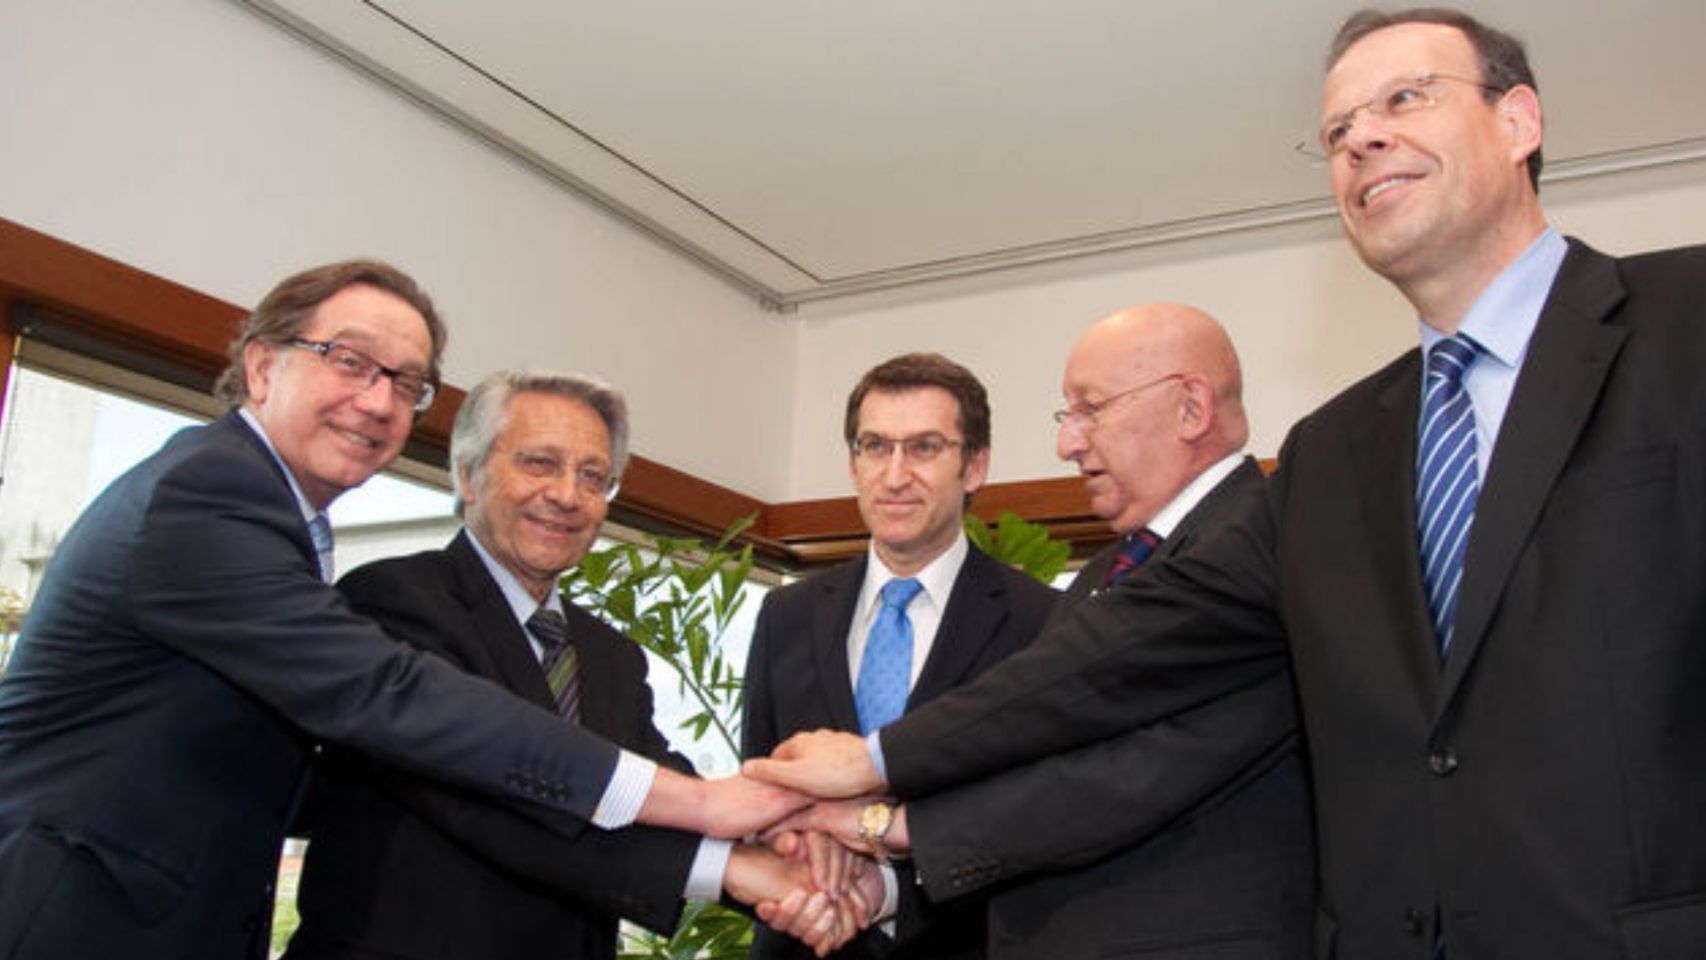 Imagen del acuerdo entre Caixa Galicia y Caixa Nova.